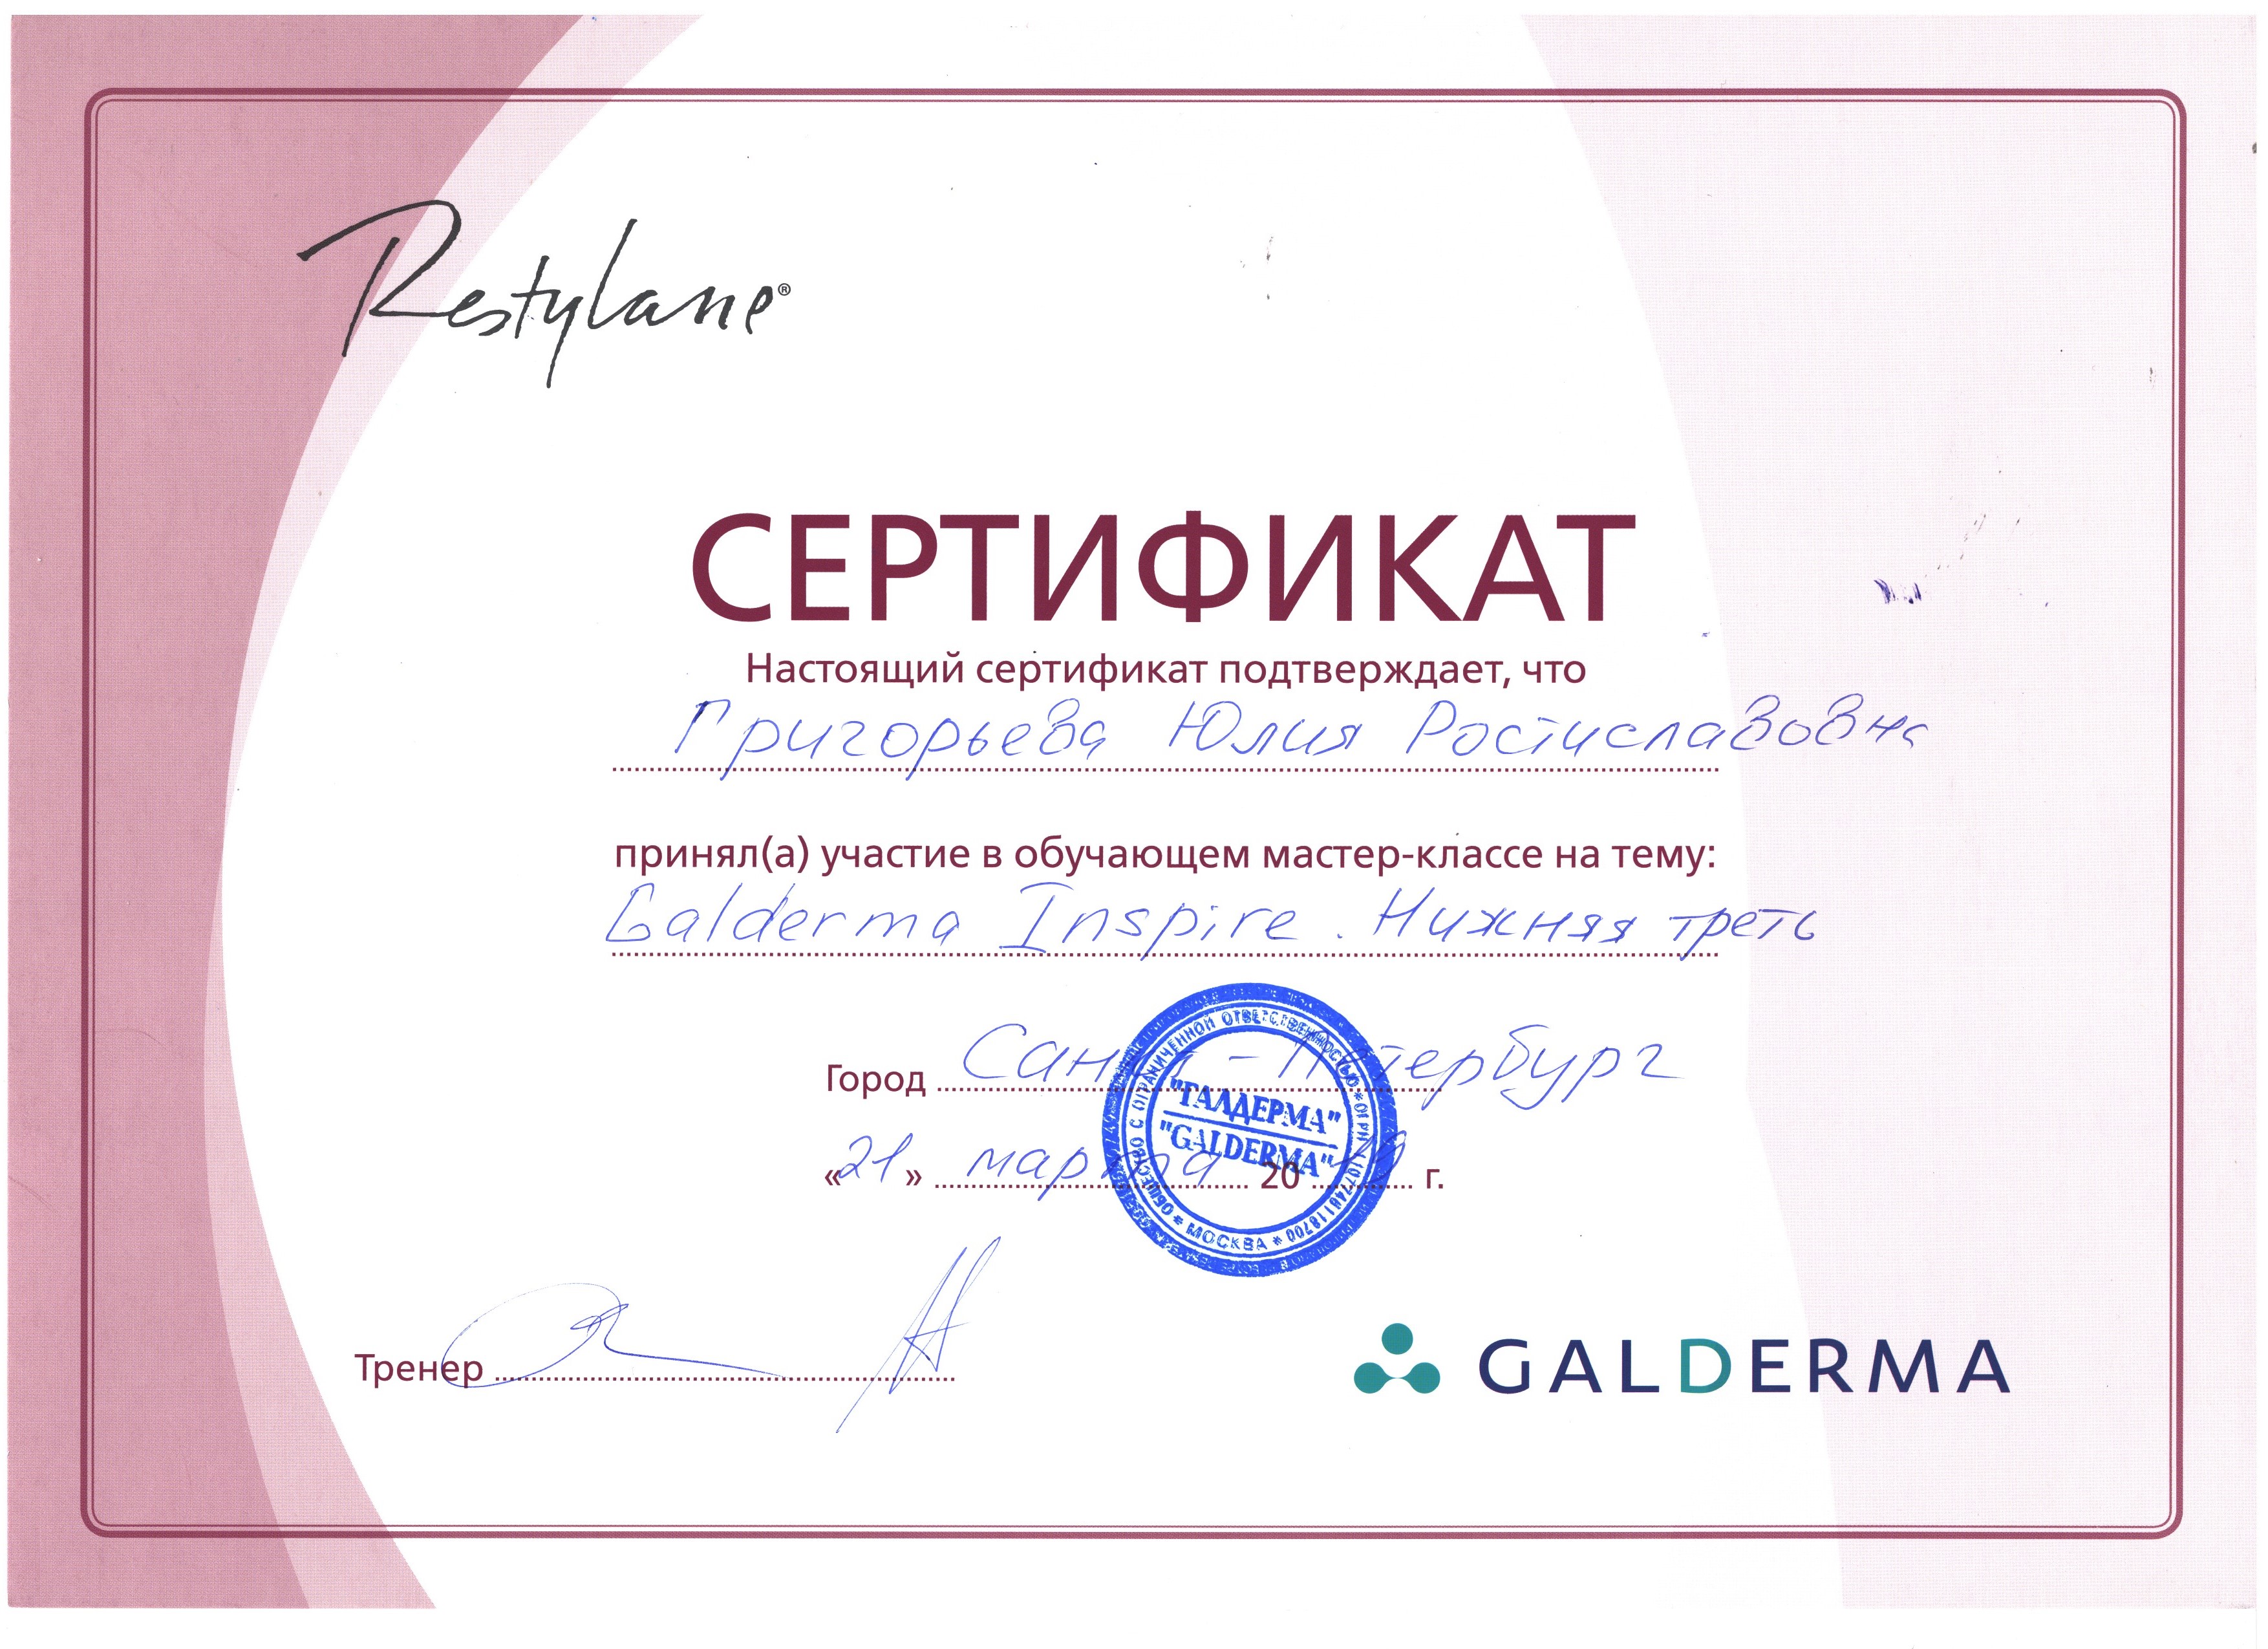 Сертификат — Galderma Inspire. Григорьева Юлия Ростиславовна